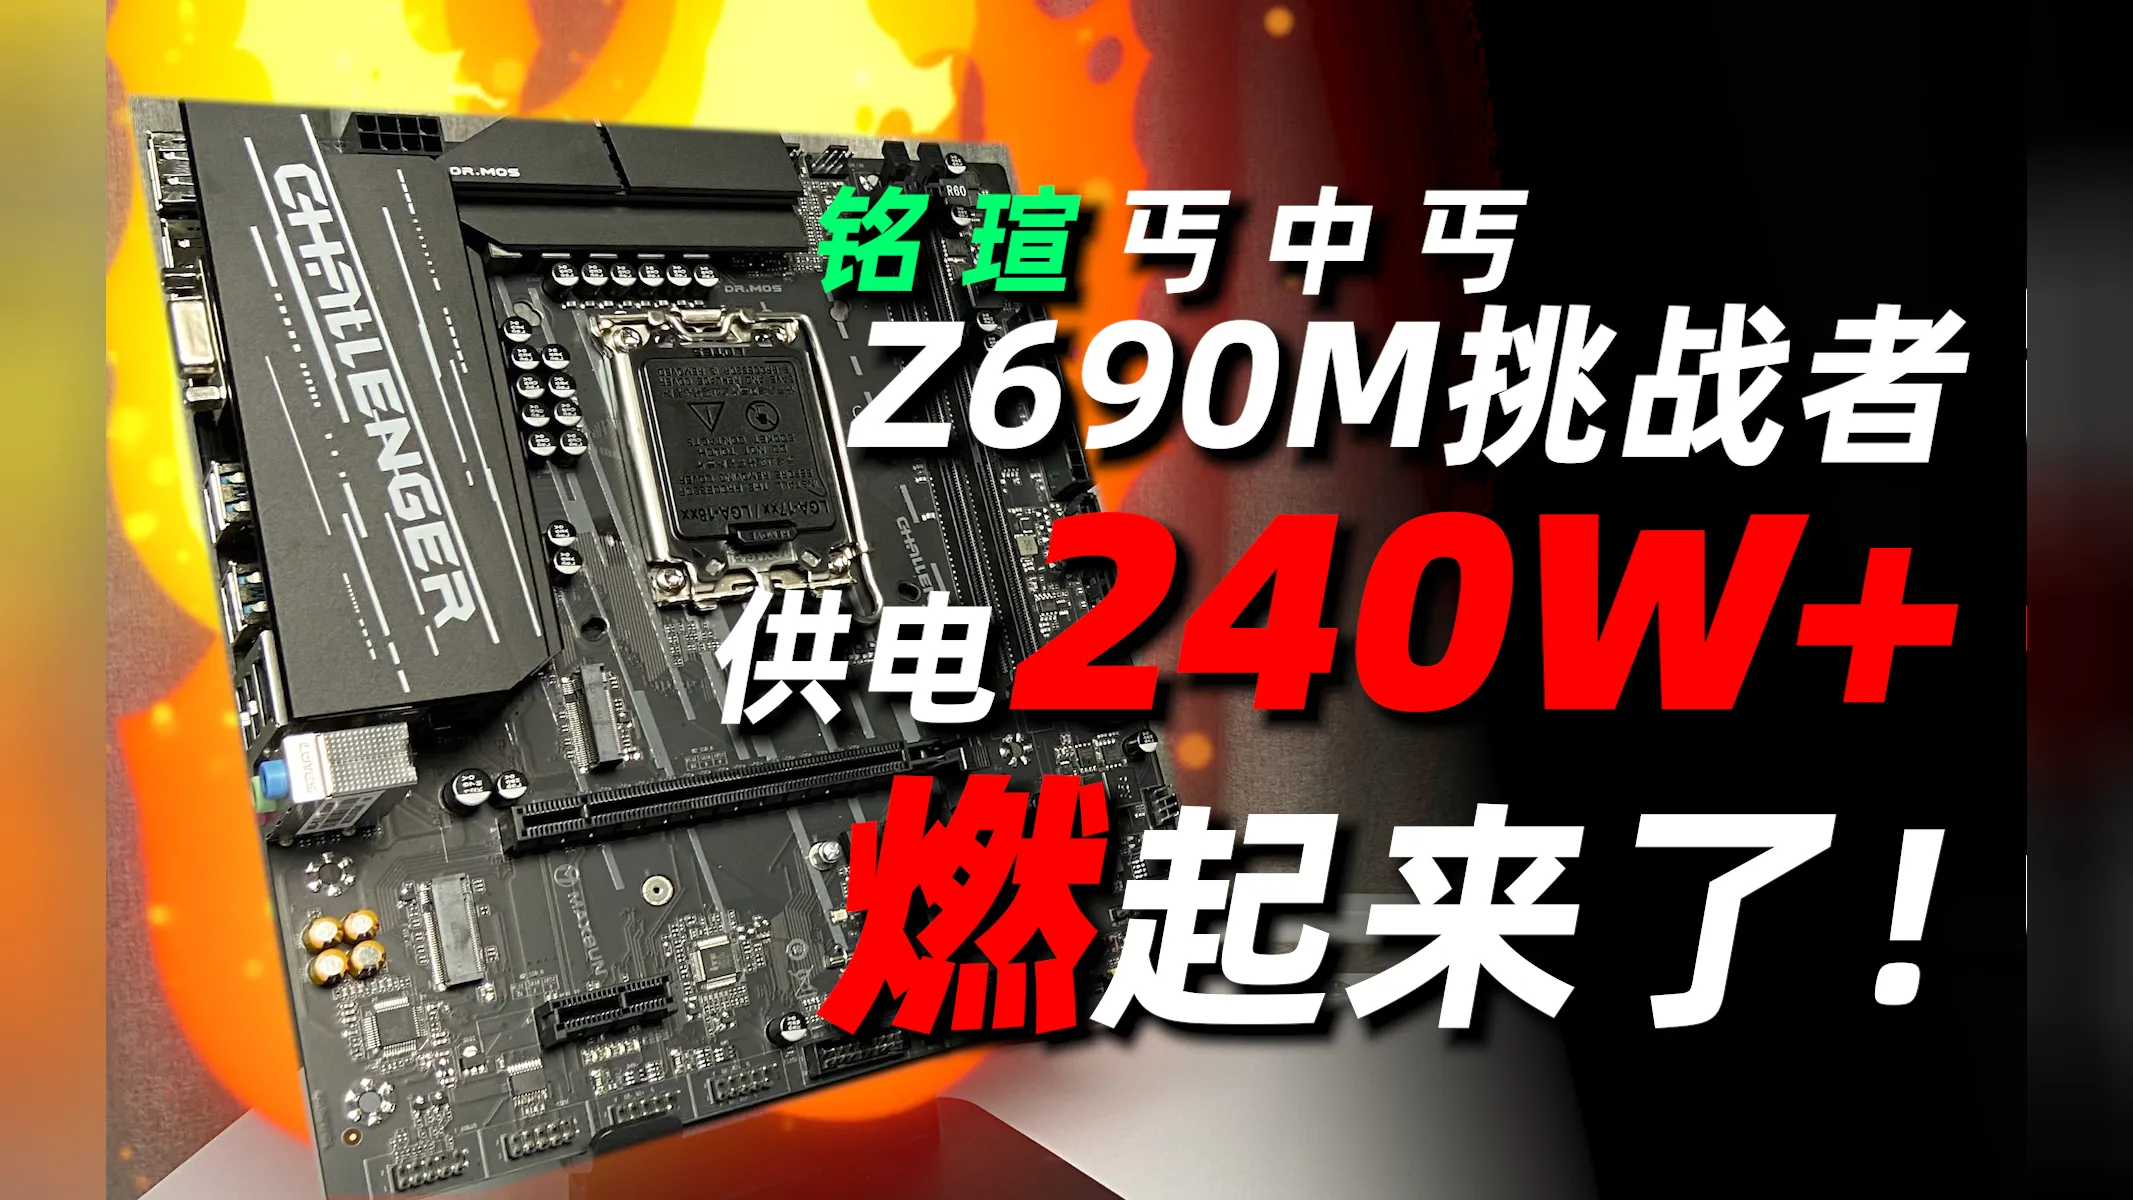 铭瑄 Z690M DDR4 主板：电竞梦想的重要阶梯，外观炫酷性能强大  第1张